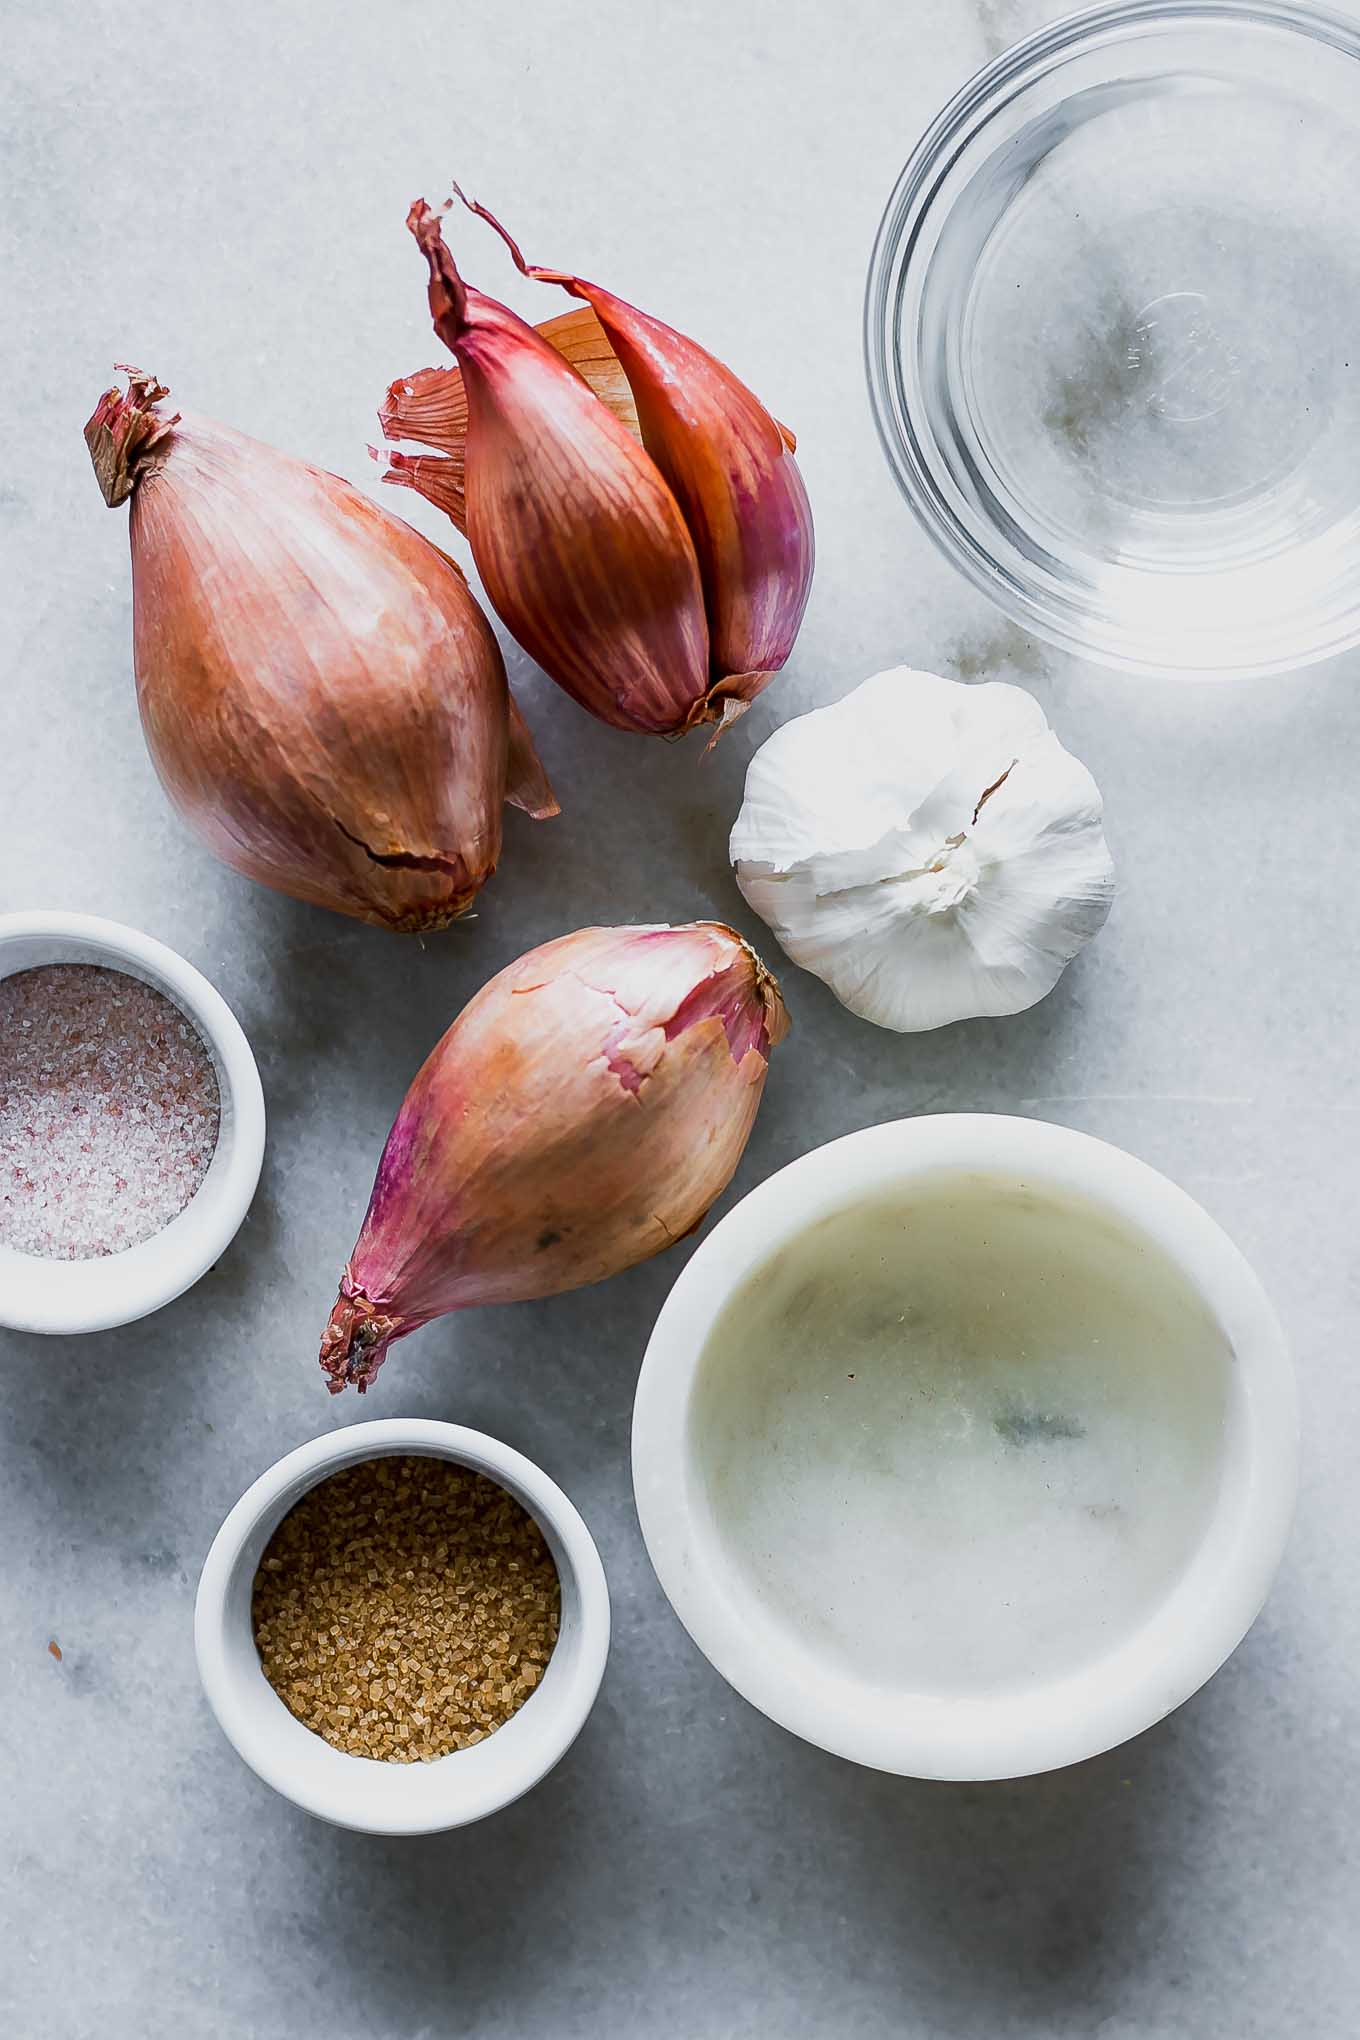 shallots, garlic, and bowls of water, vinegar, salt, and sugar for pickling